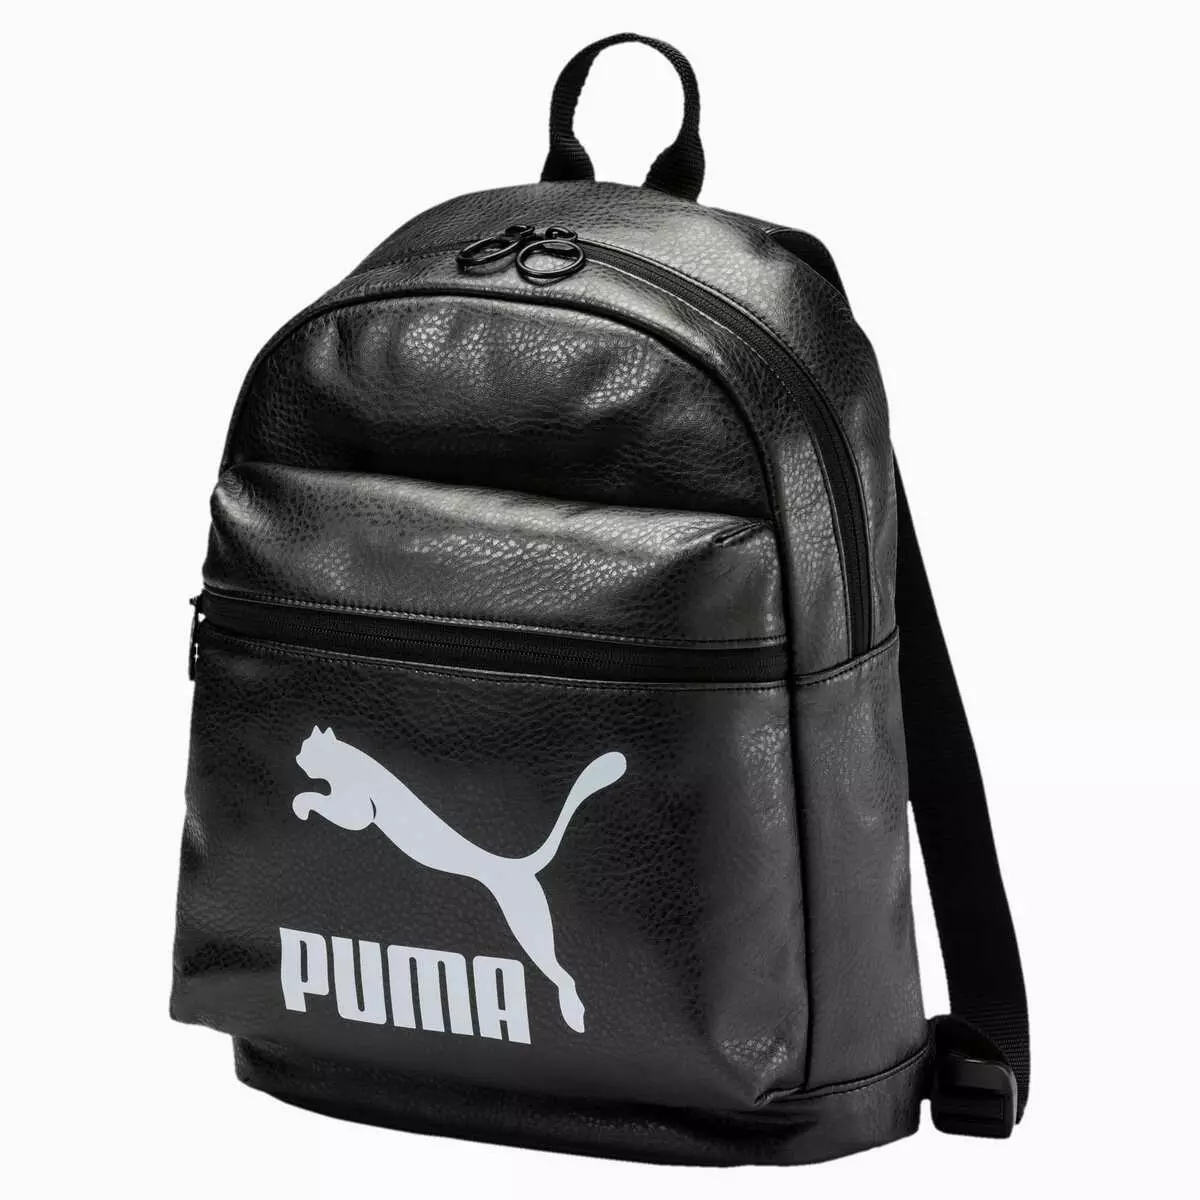 Puma hátizsákok: Nő és férfi, fekete, rózsaszín, bőr sport, kerek és egyéb eredeti modellek. Hogyan kell mosni? 15396_43